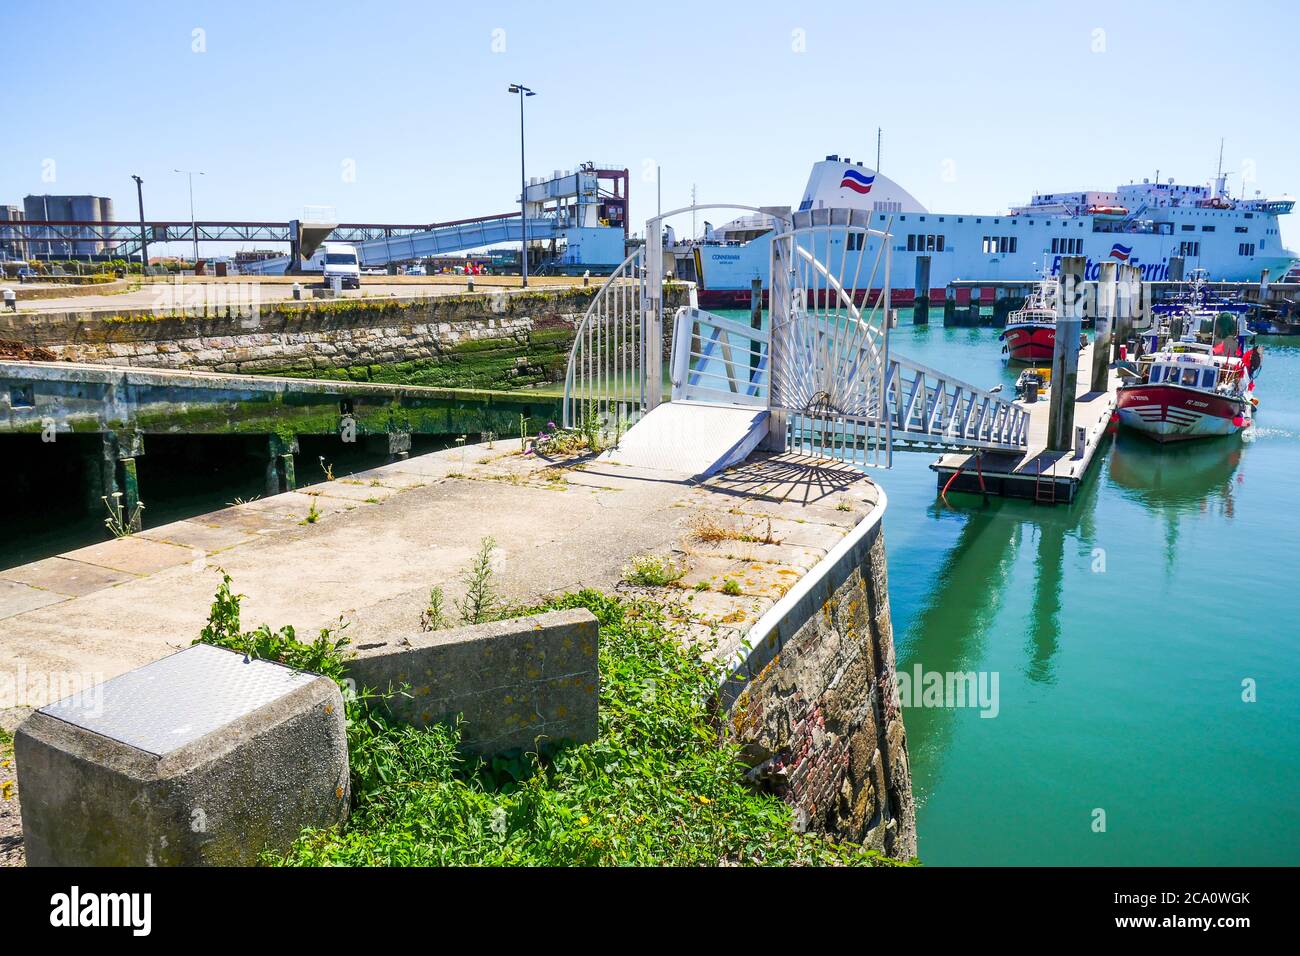 Traghetto e navi da pesca, porto di la Havre, le Havre, Senna Marittima, Normandia, Francia Foto Stock